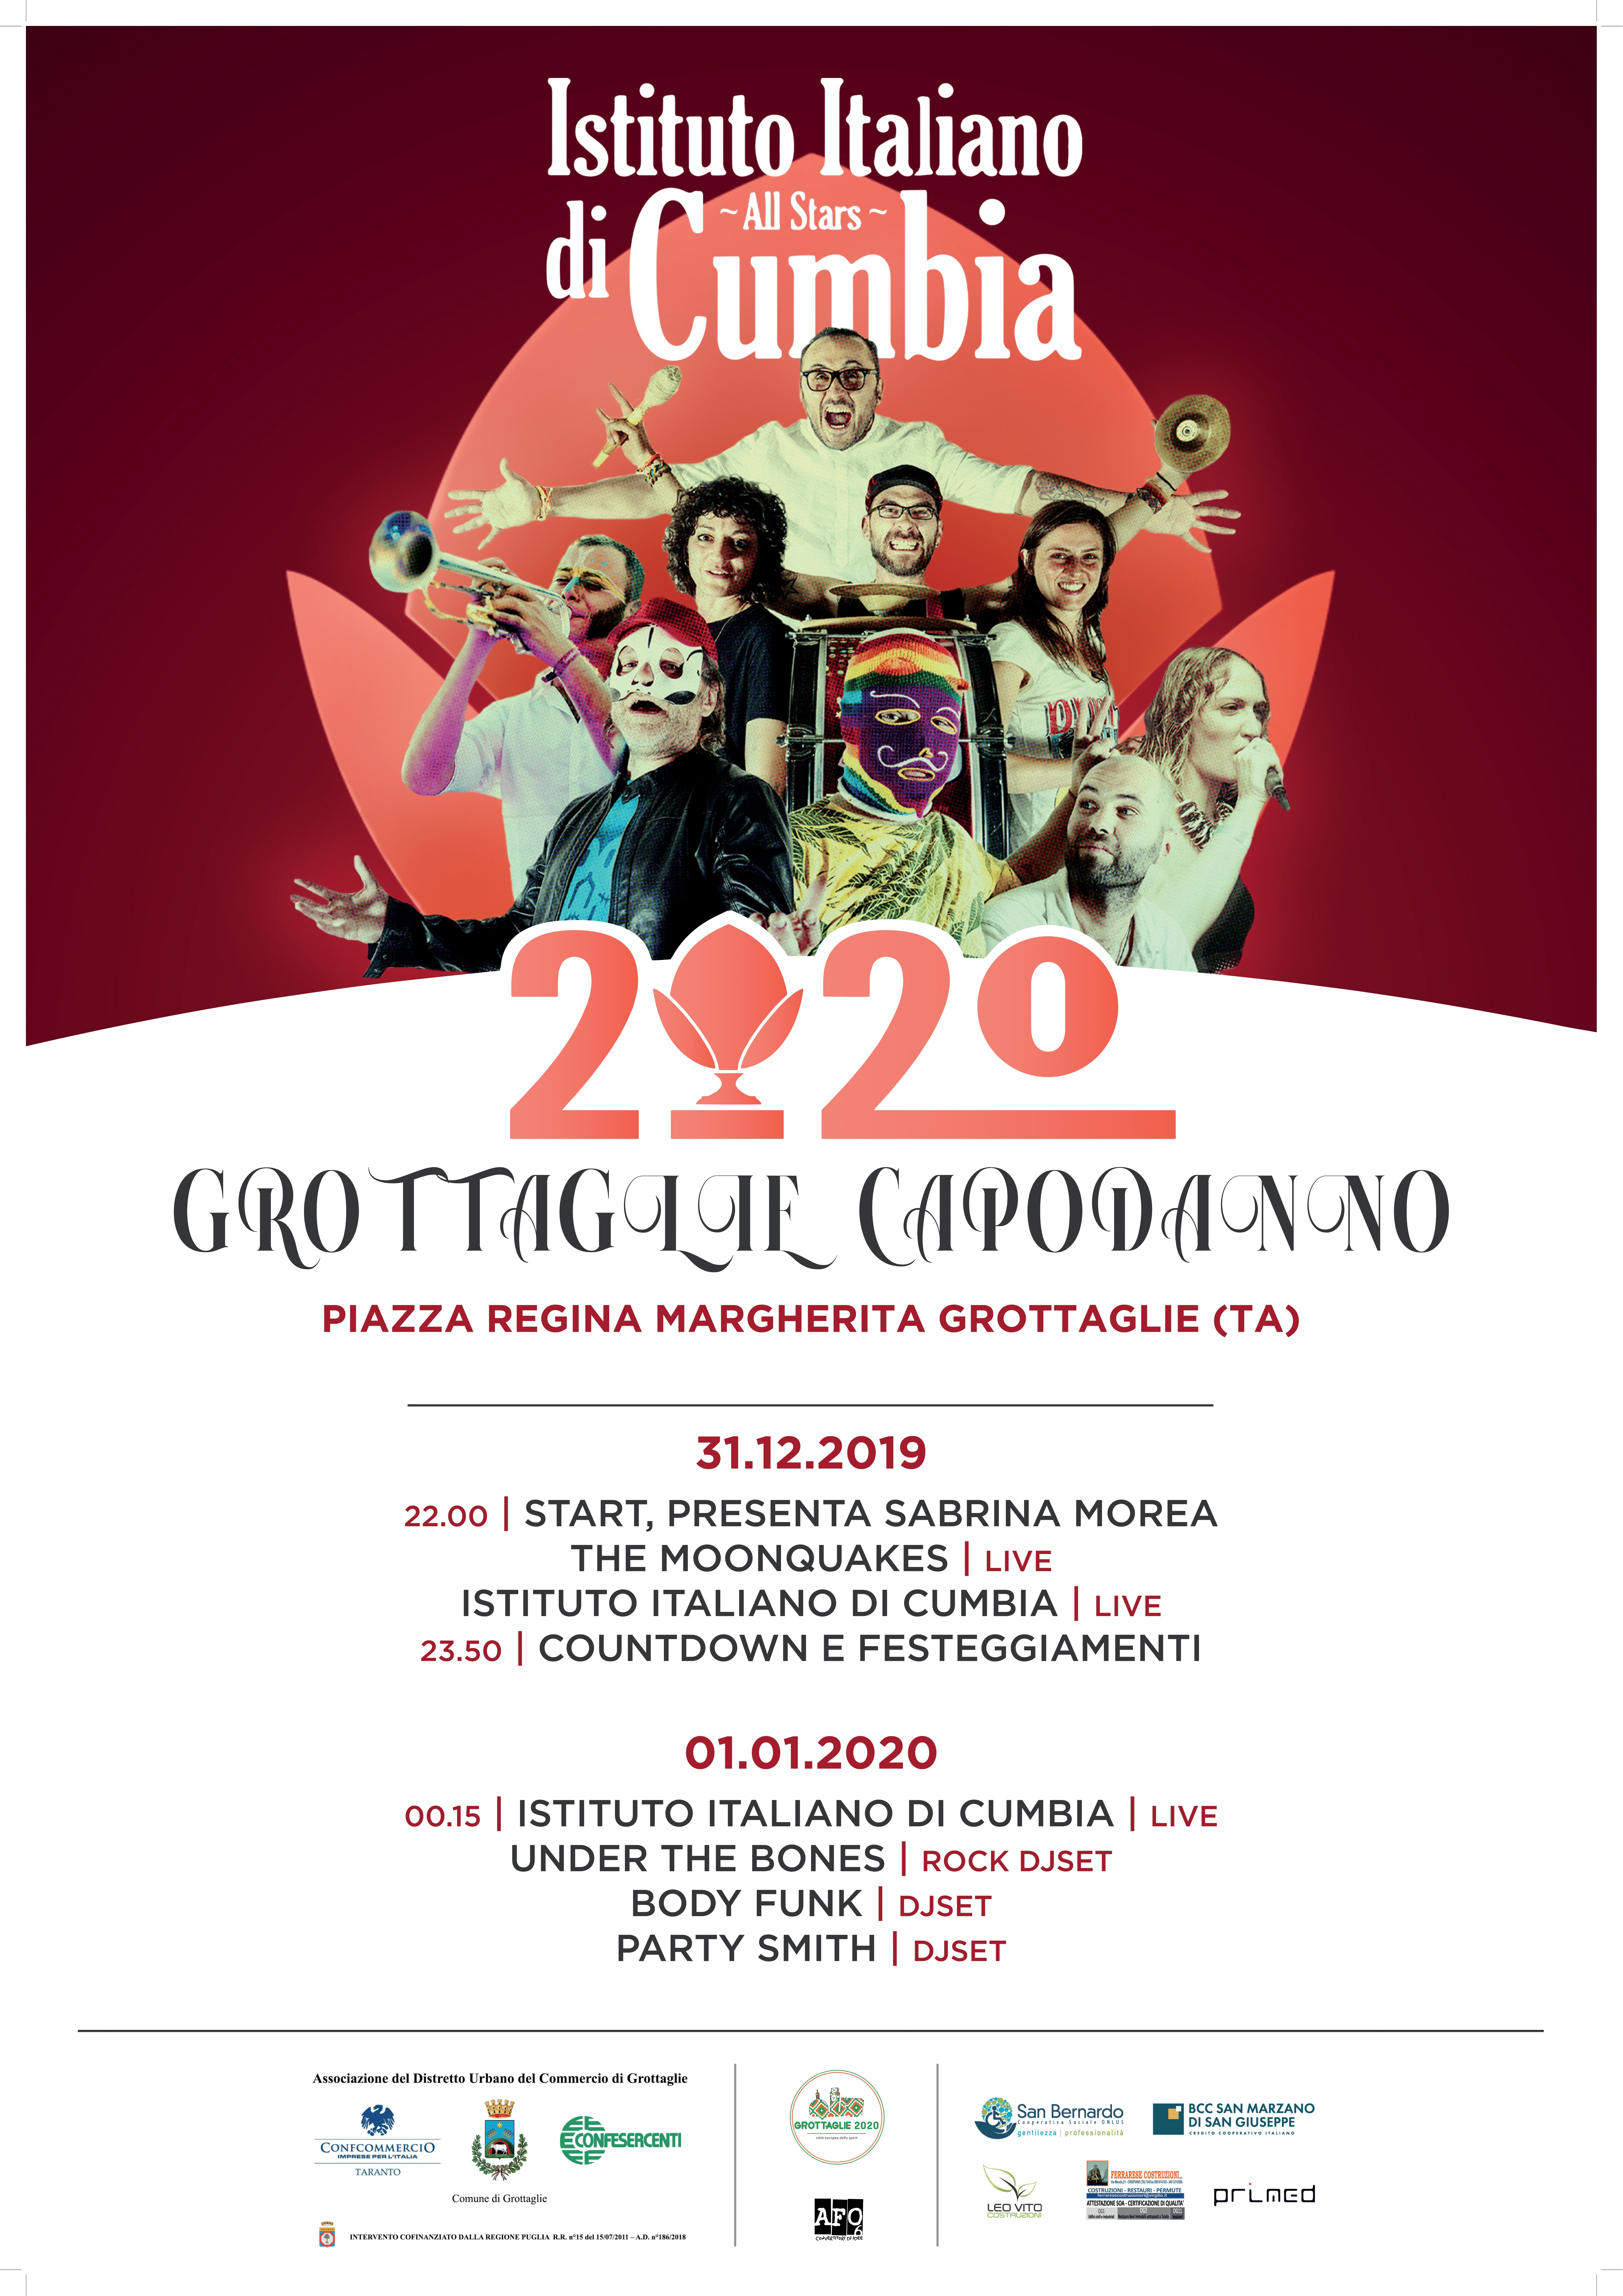 Capodanno 2020 a Grottaglie, il brindisi in Piazza Regina Margherita con l’Istituto Italiano di Cumbia